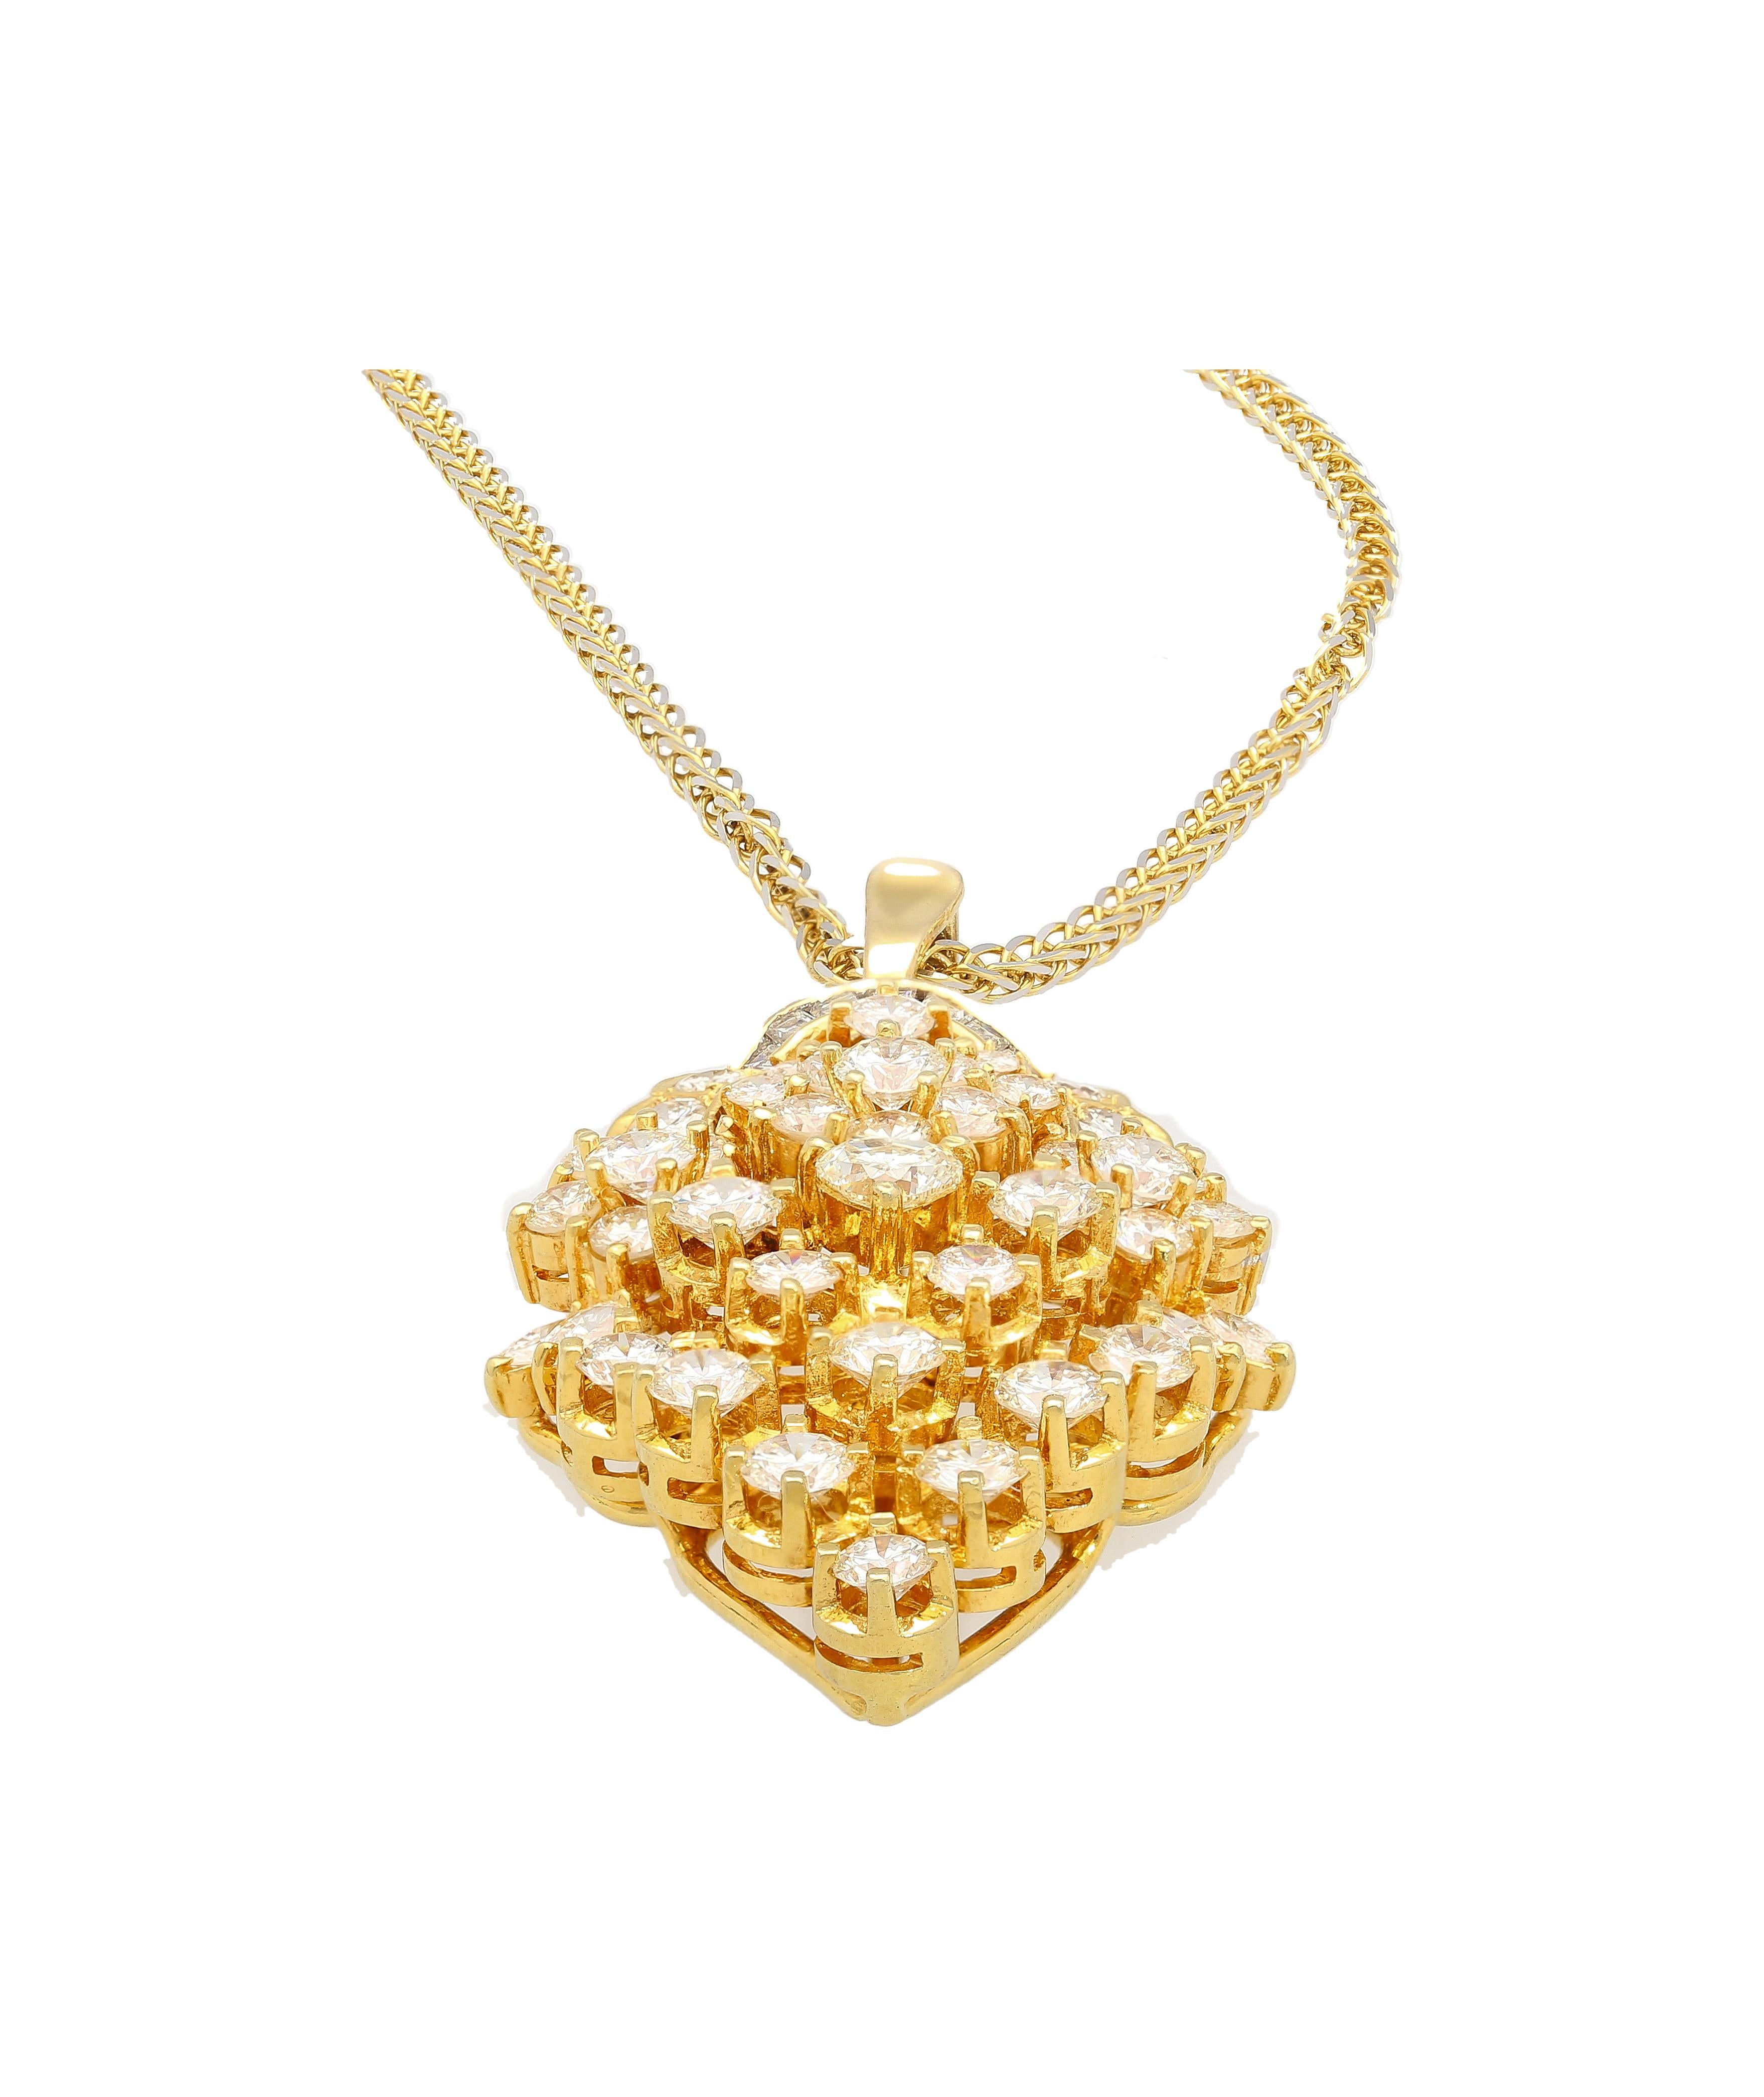 Multiförmiger Diamantanhänger aus 18 Karat Weißgold - ein zeitloses Stück, das Luxus und natürliche Schönheit ausstrahlt. Dieser Diamantanhänger zeigt in der Mitte einen herzförmigen Diamanten, der von Diamanten im Marquise-, Trillion- und